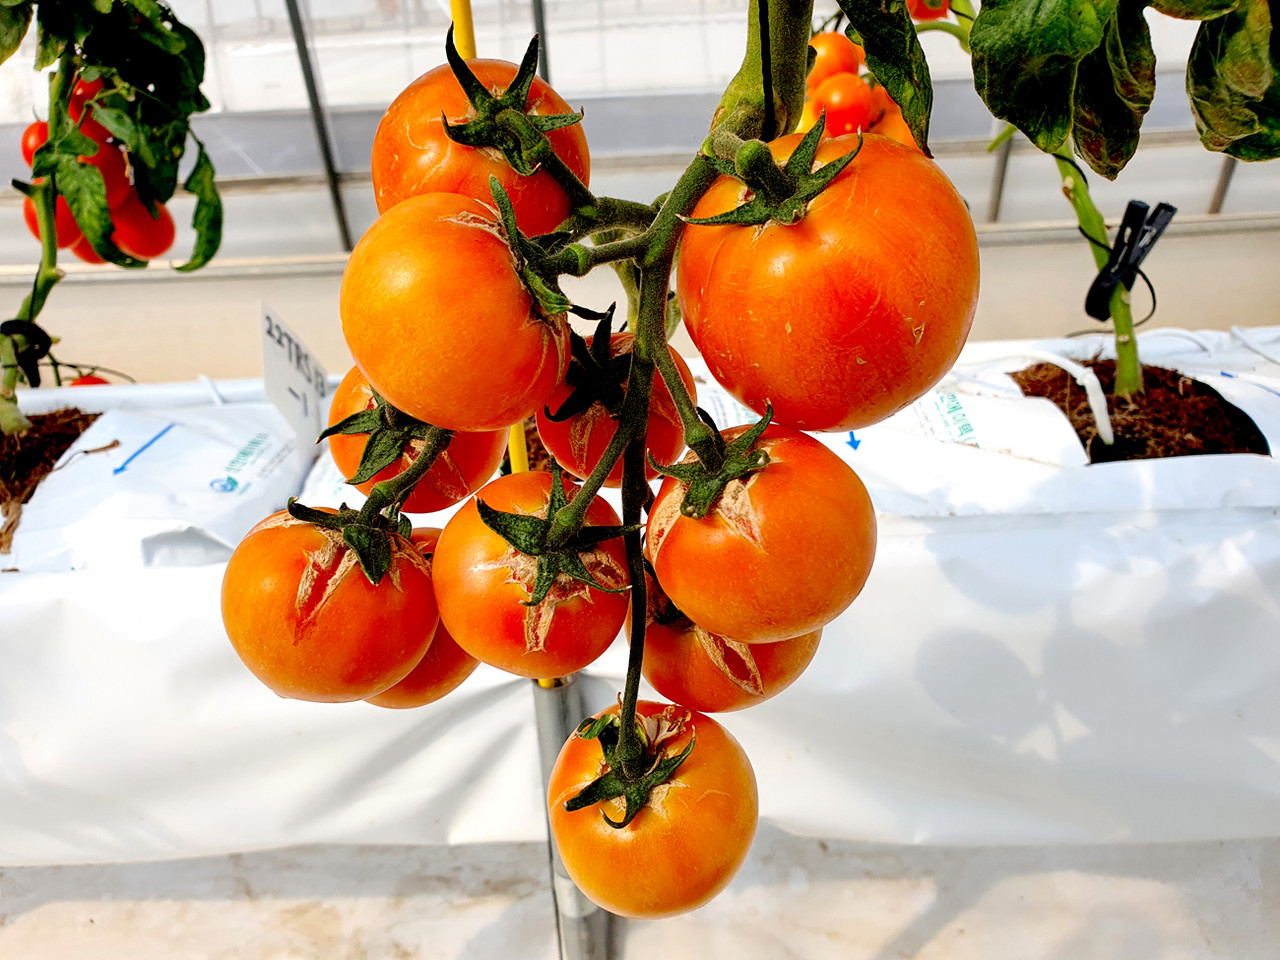 여름철 잦은 비로 증가하는 토마토 열매 터짐을 예방하기 위한 토양 수분 관리가 중요하다. 